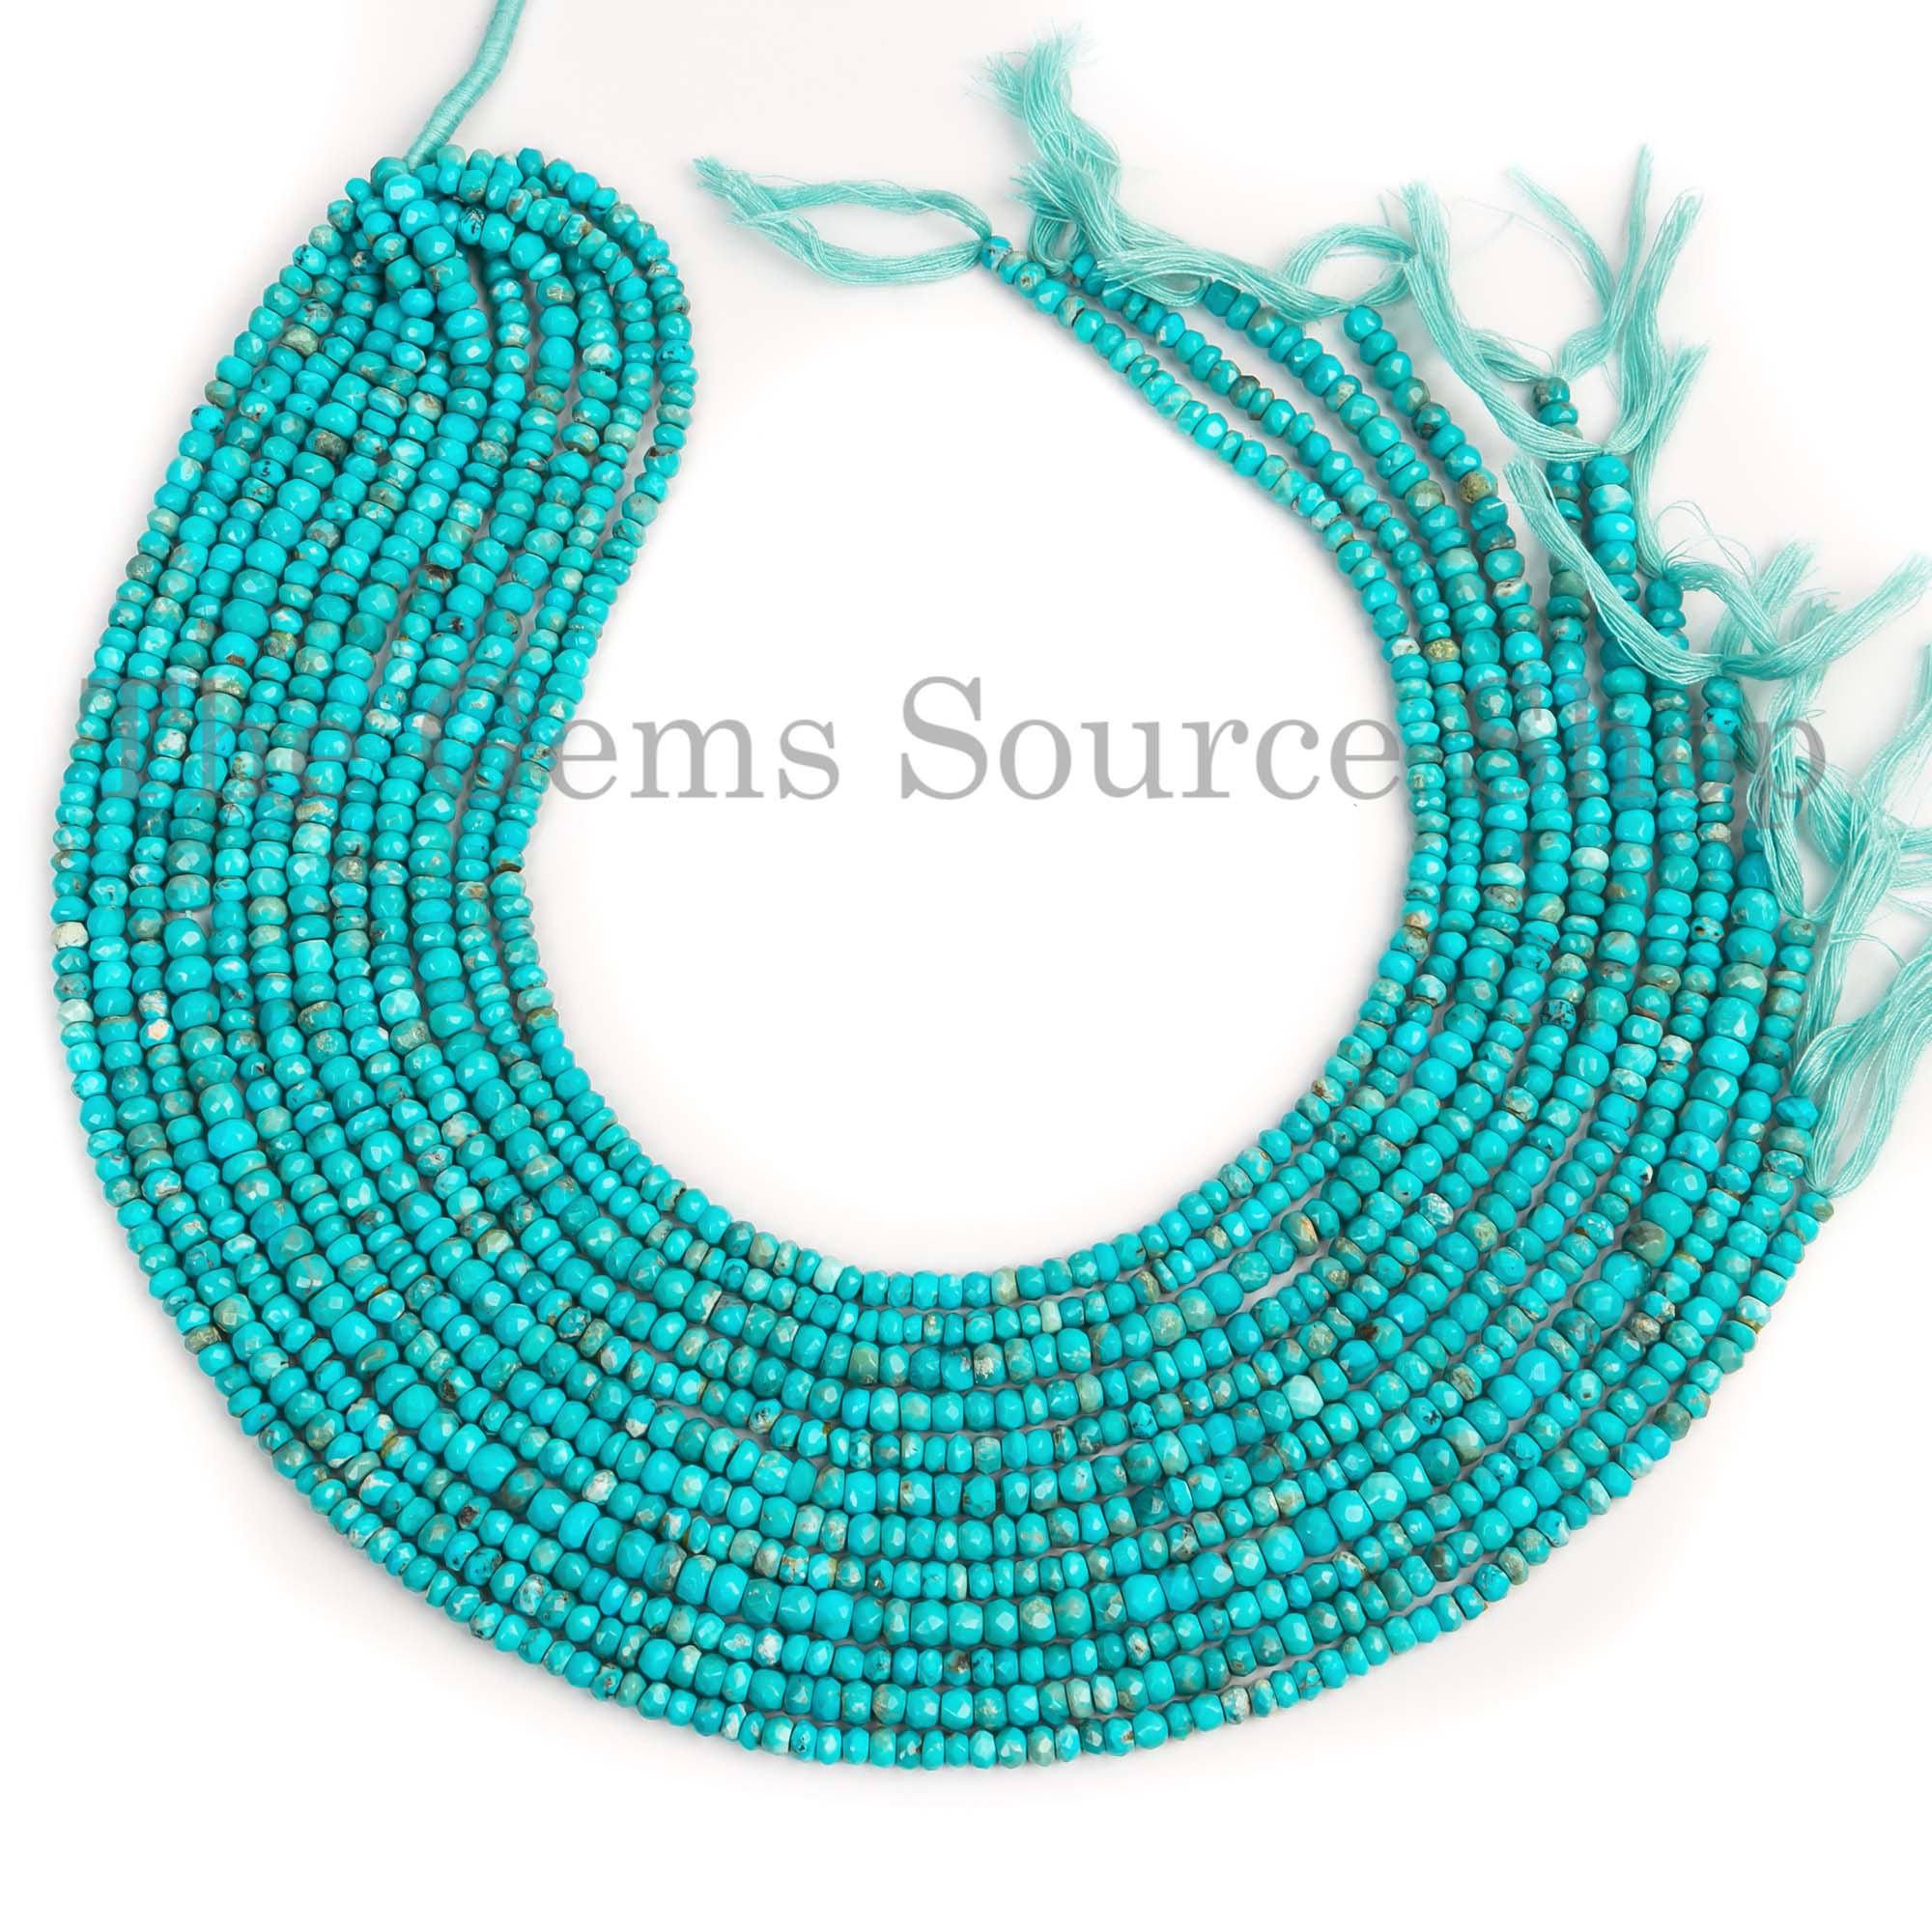 Sleeping Beauty Turquoise Beads, Turquoise Faceted Beads, Turquoise Rondelle Shape Beads, Wholesale Beads